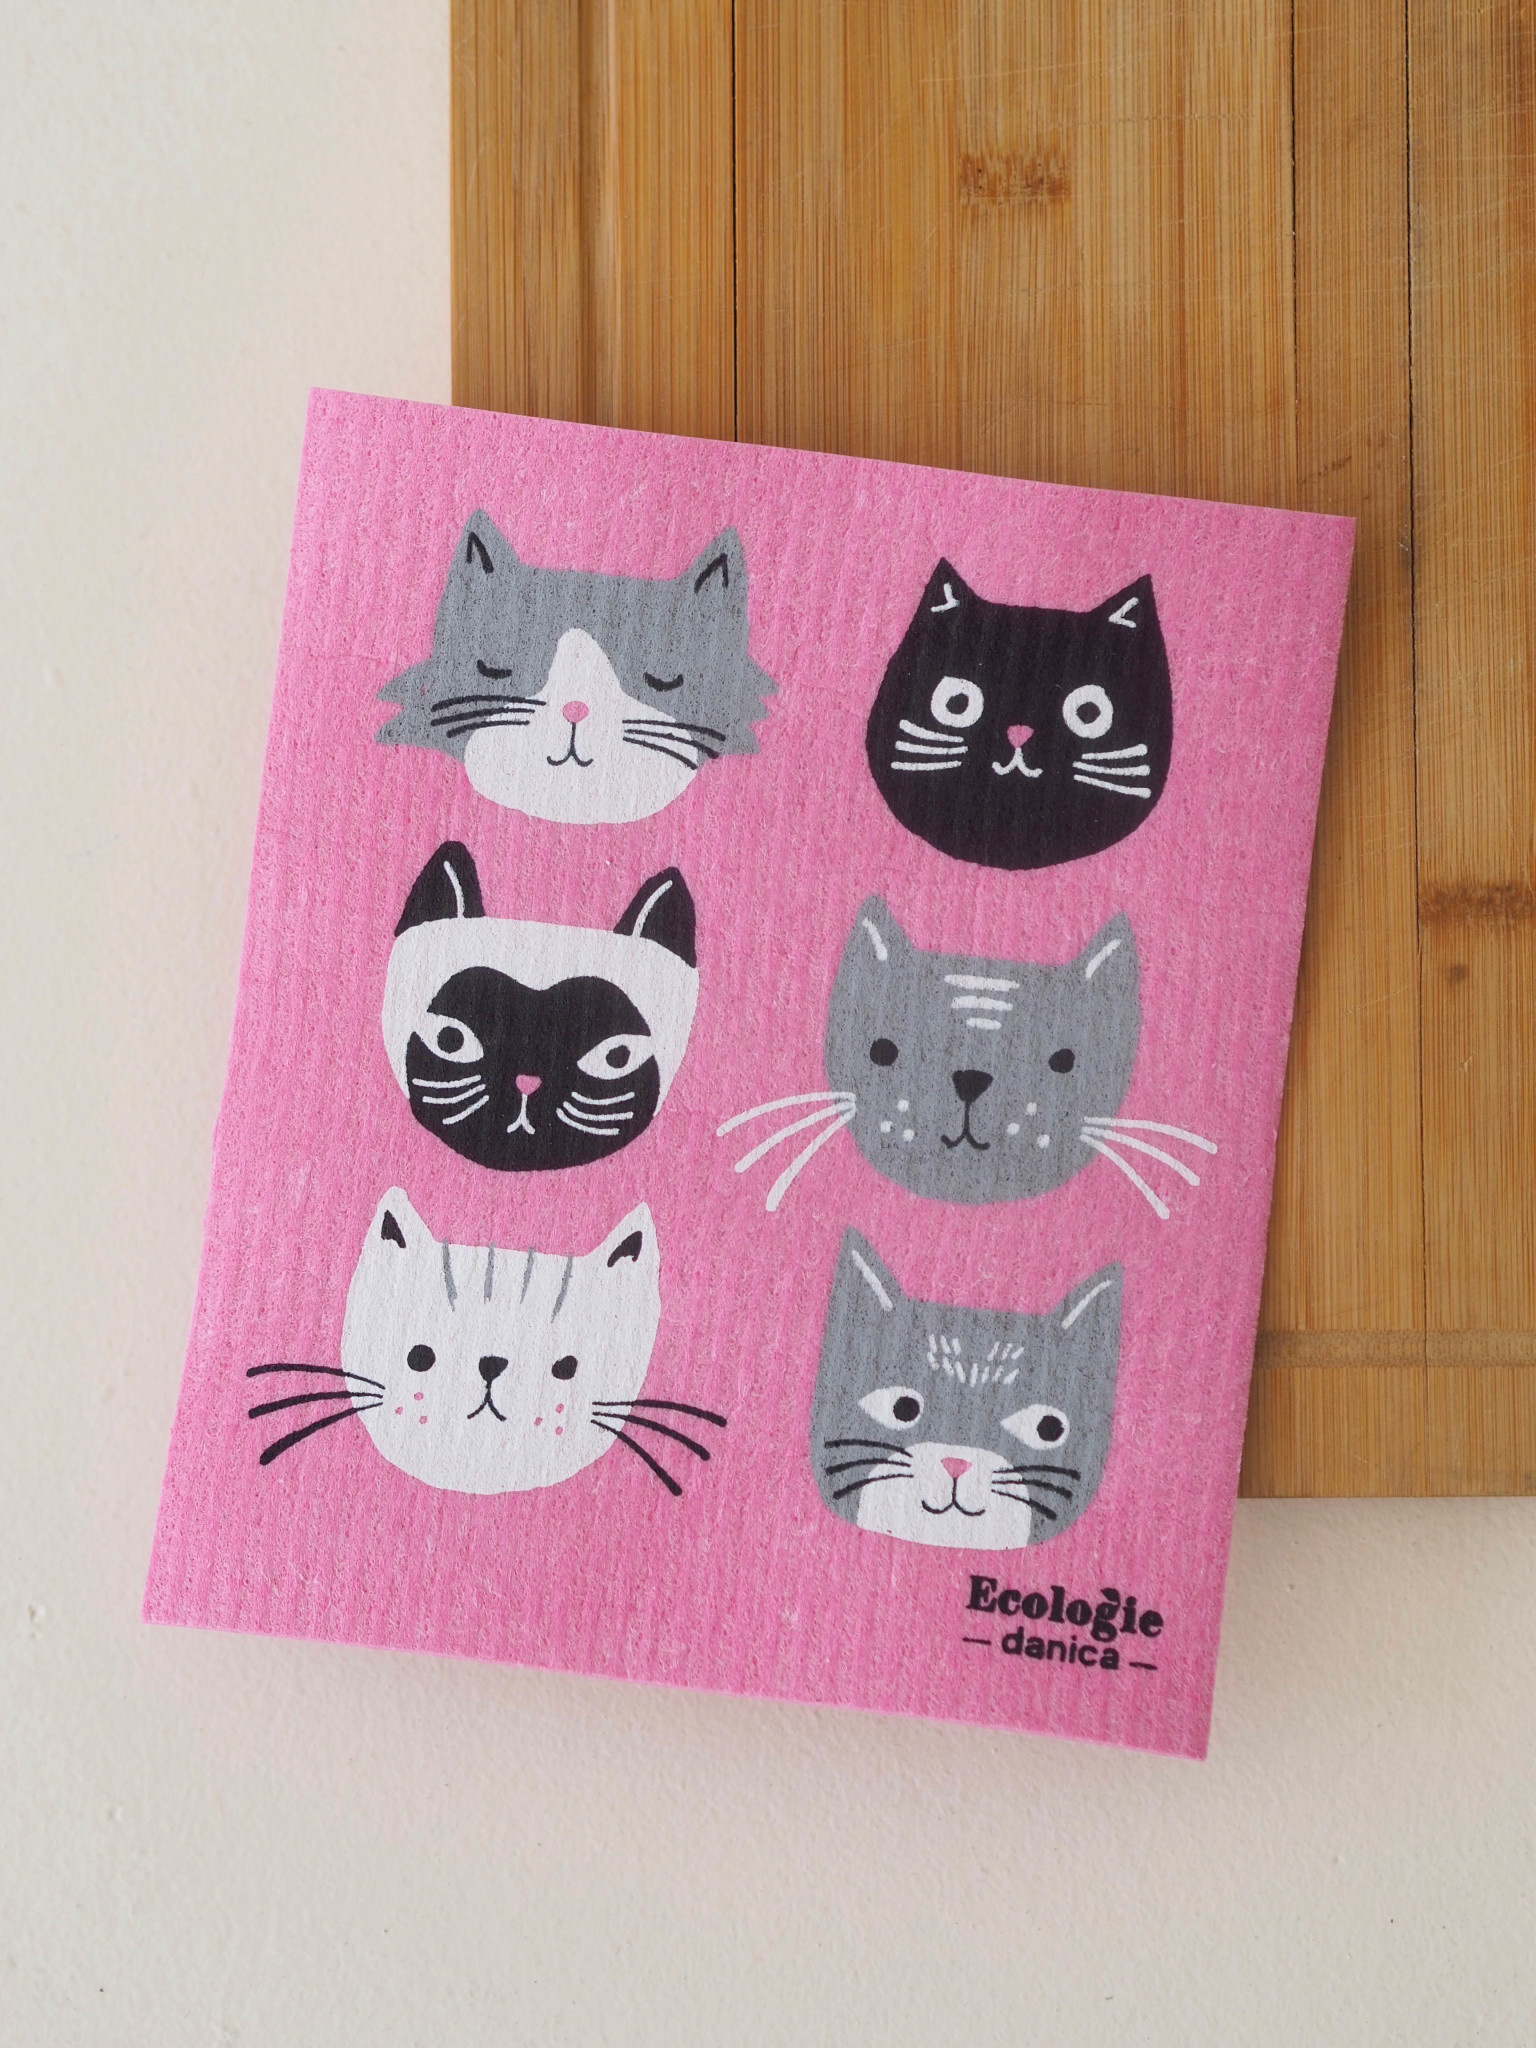 Lingette suédoise - Cats meow